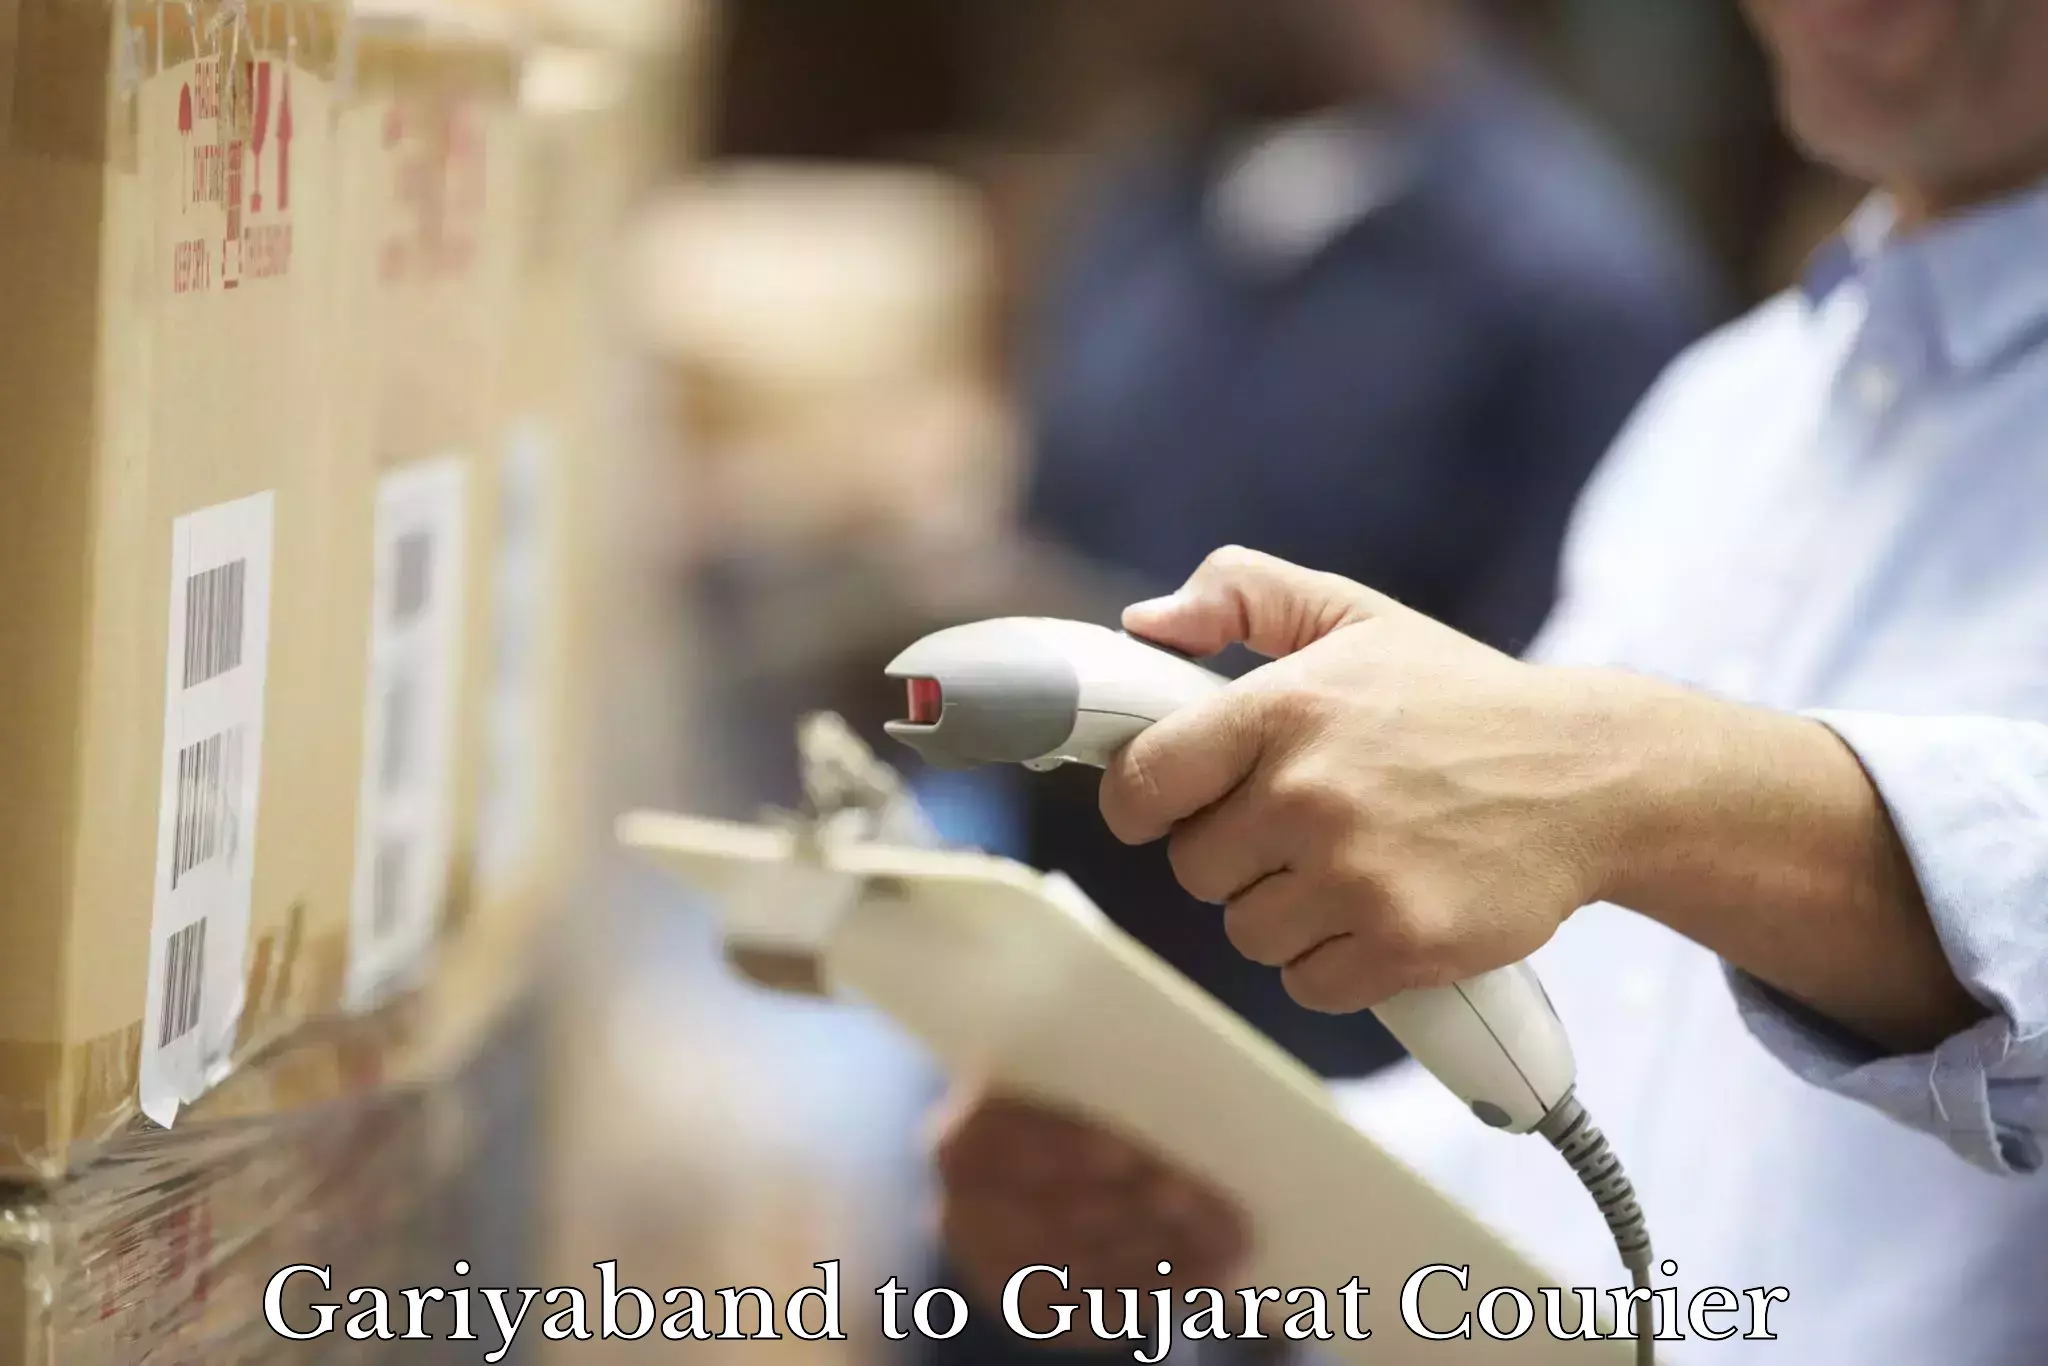 Express postal services Gariyaband to Gujarat